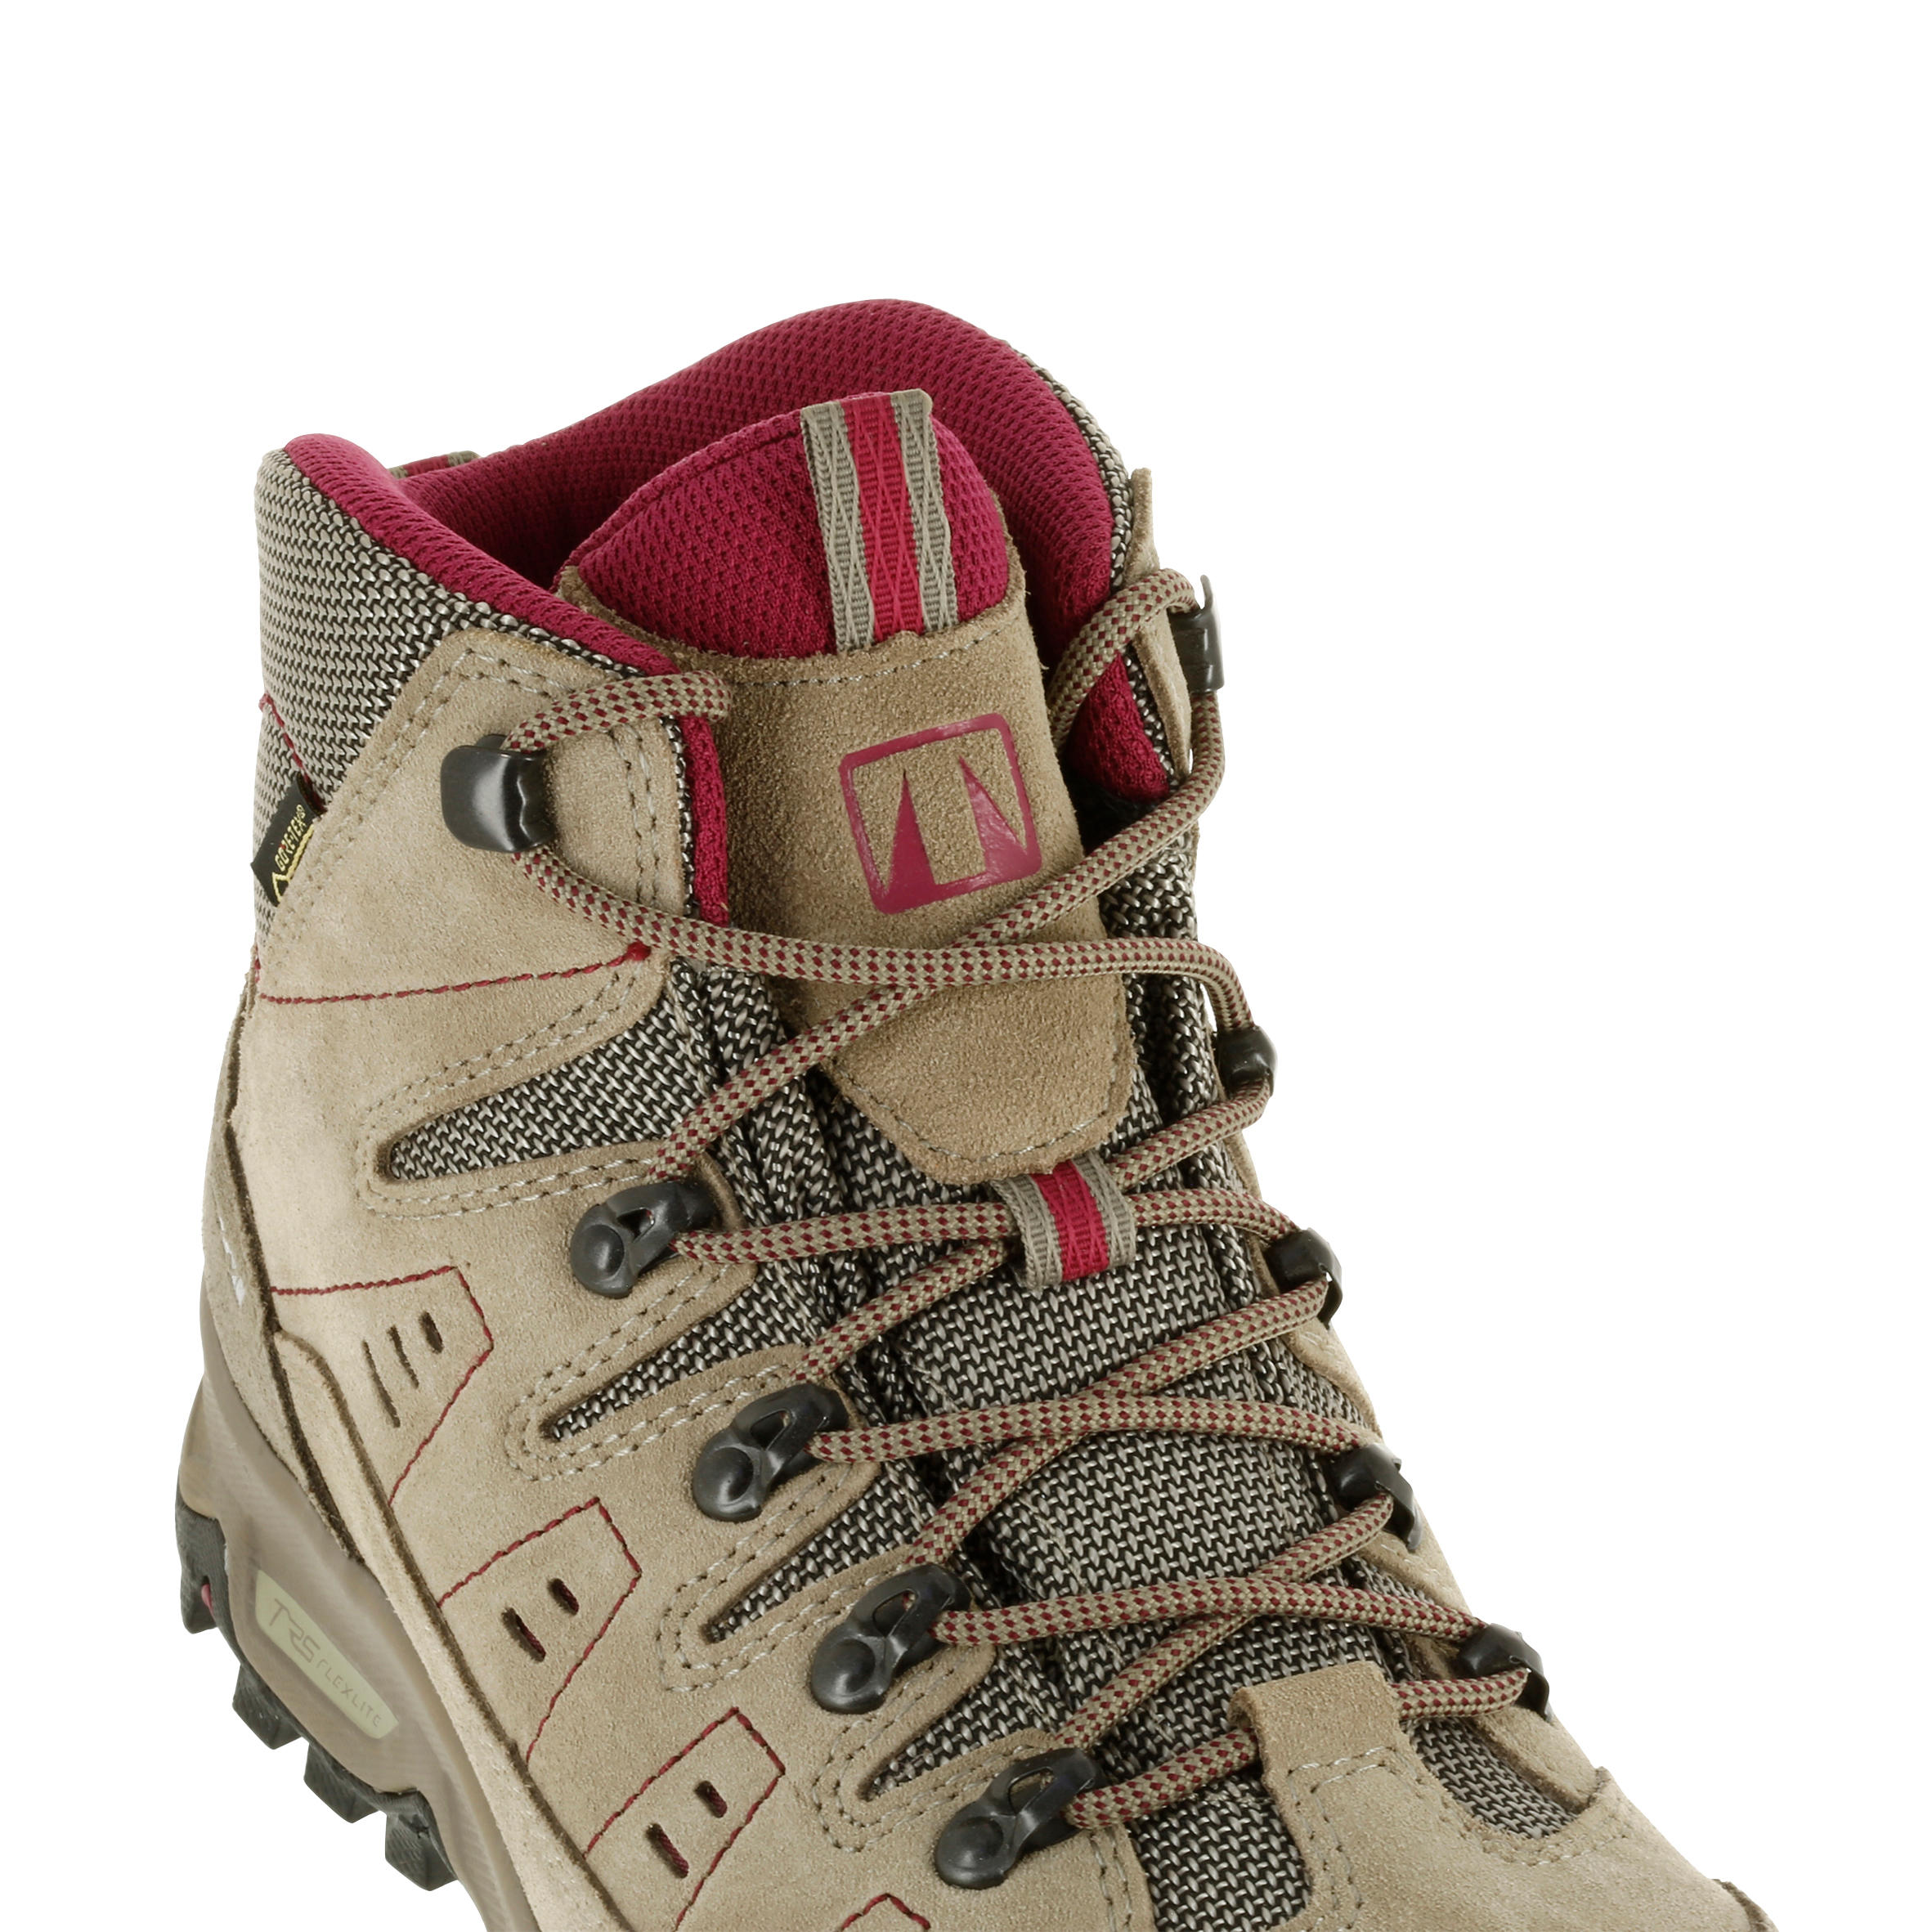 Waterproof Trekking Shoes - GORETEX - VIBRAM-TECNICA STARCROSS - W Beige 7/13